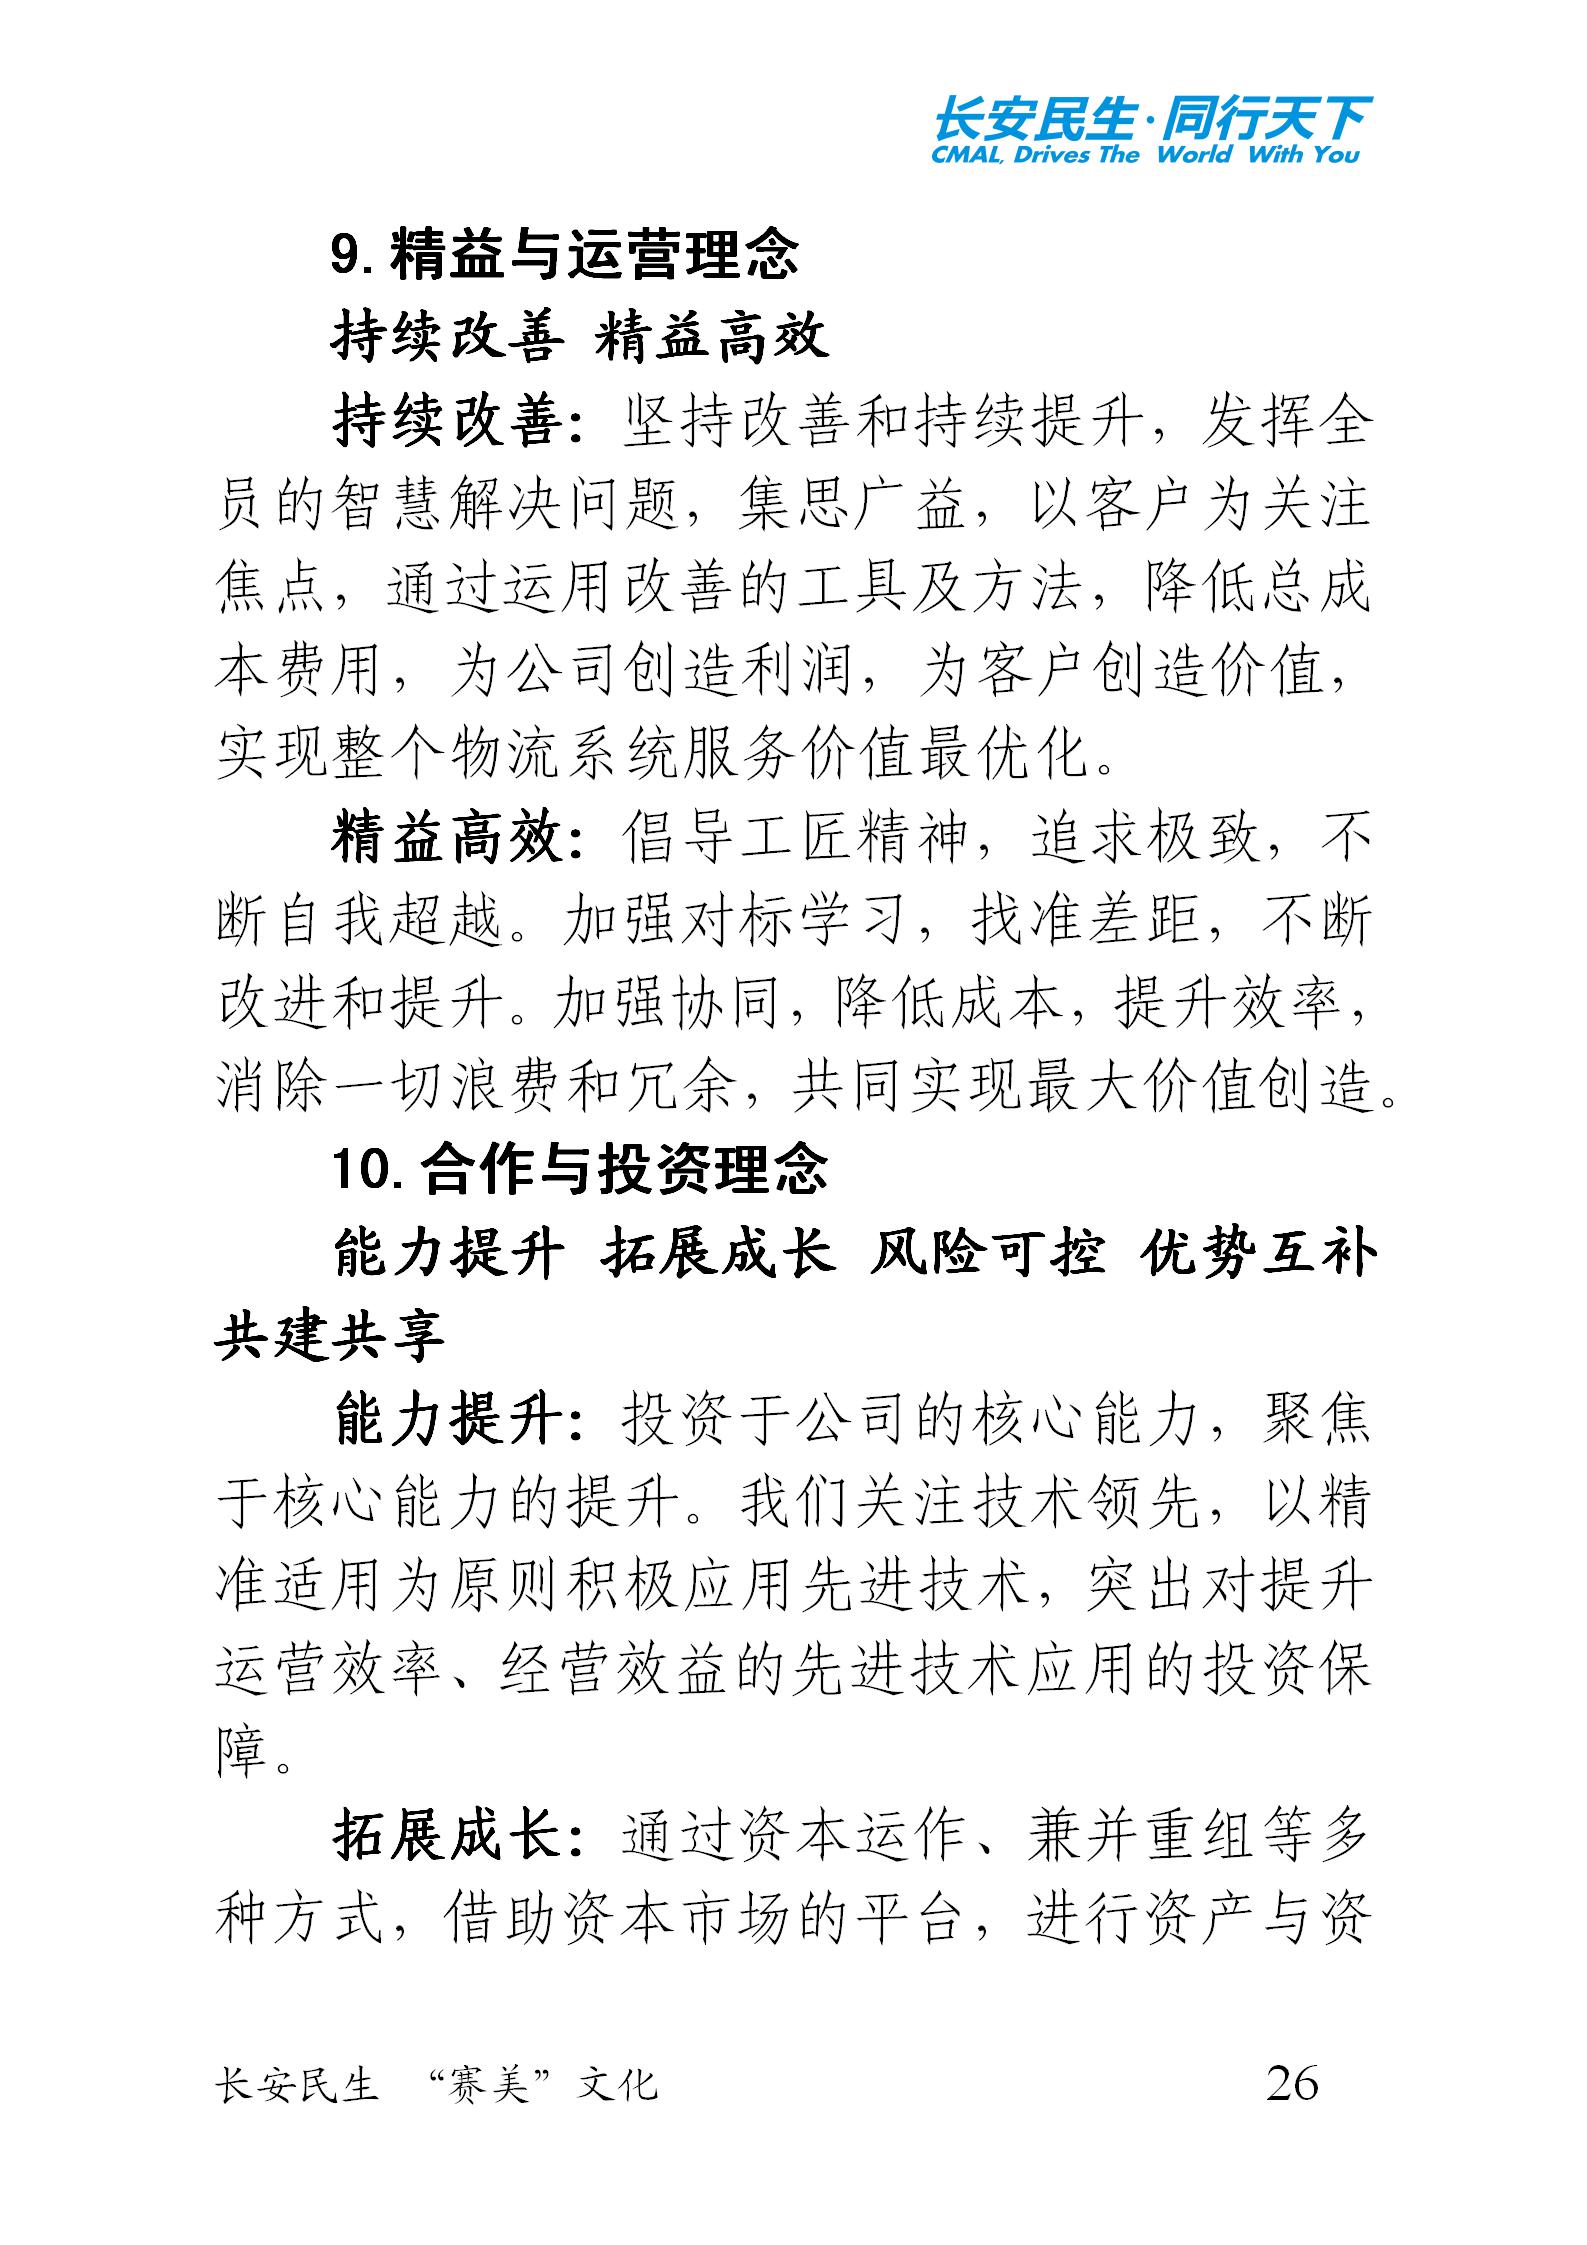 重庆长安民生物流股份有限公司《“赛美”文化手册》